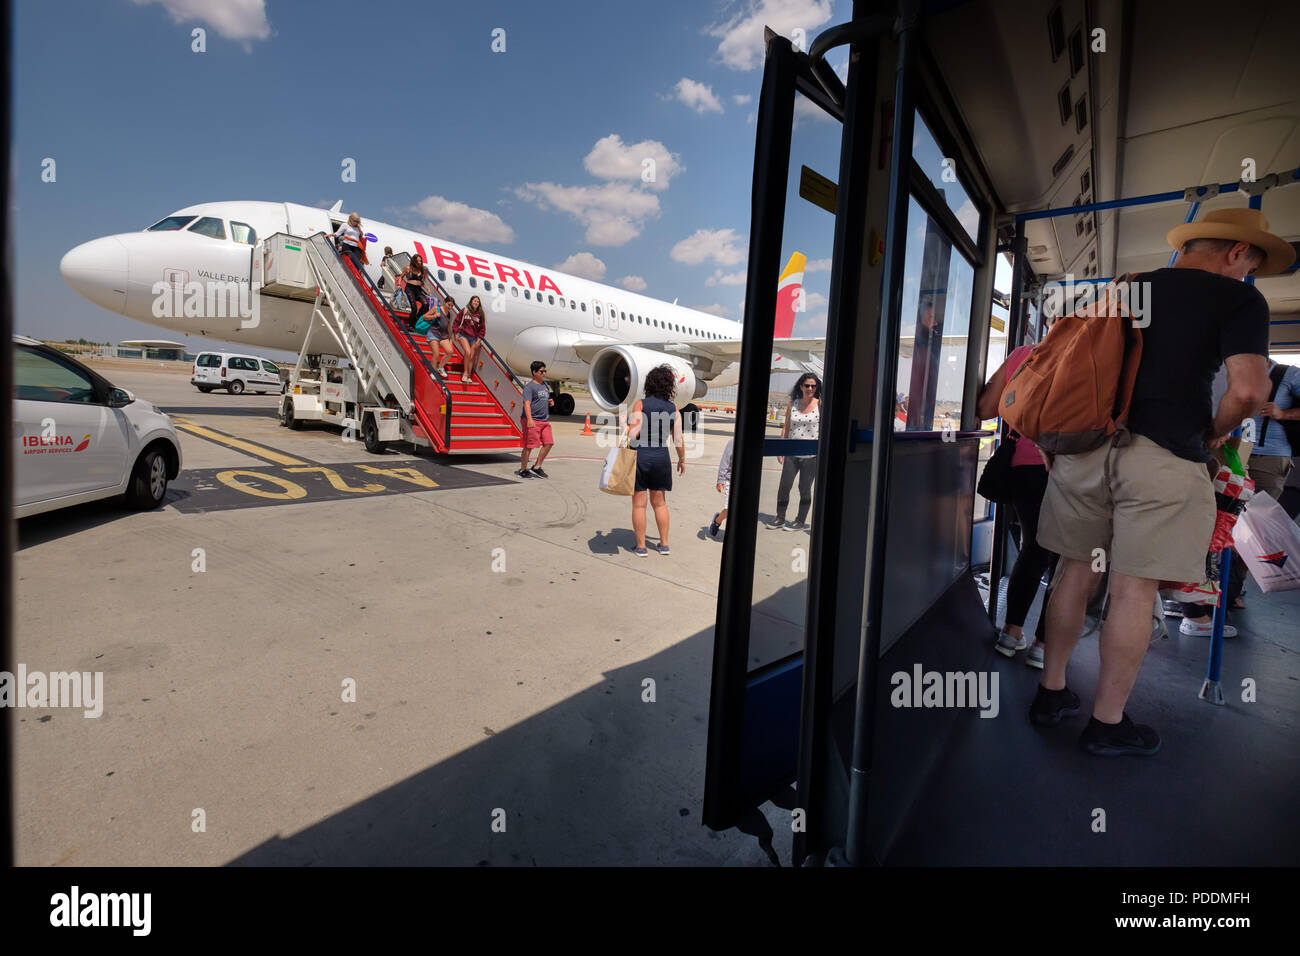 Lo sbarco dei passeggeri di un aereo Iberia Foto Stock